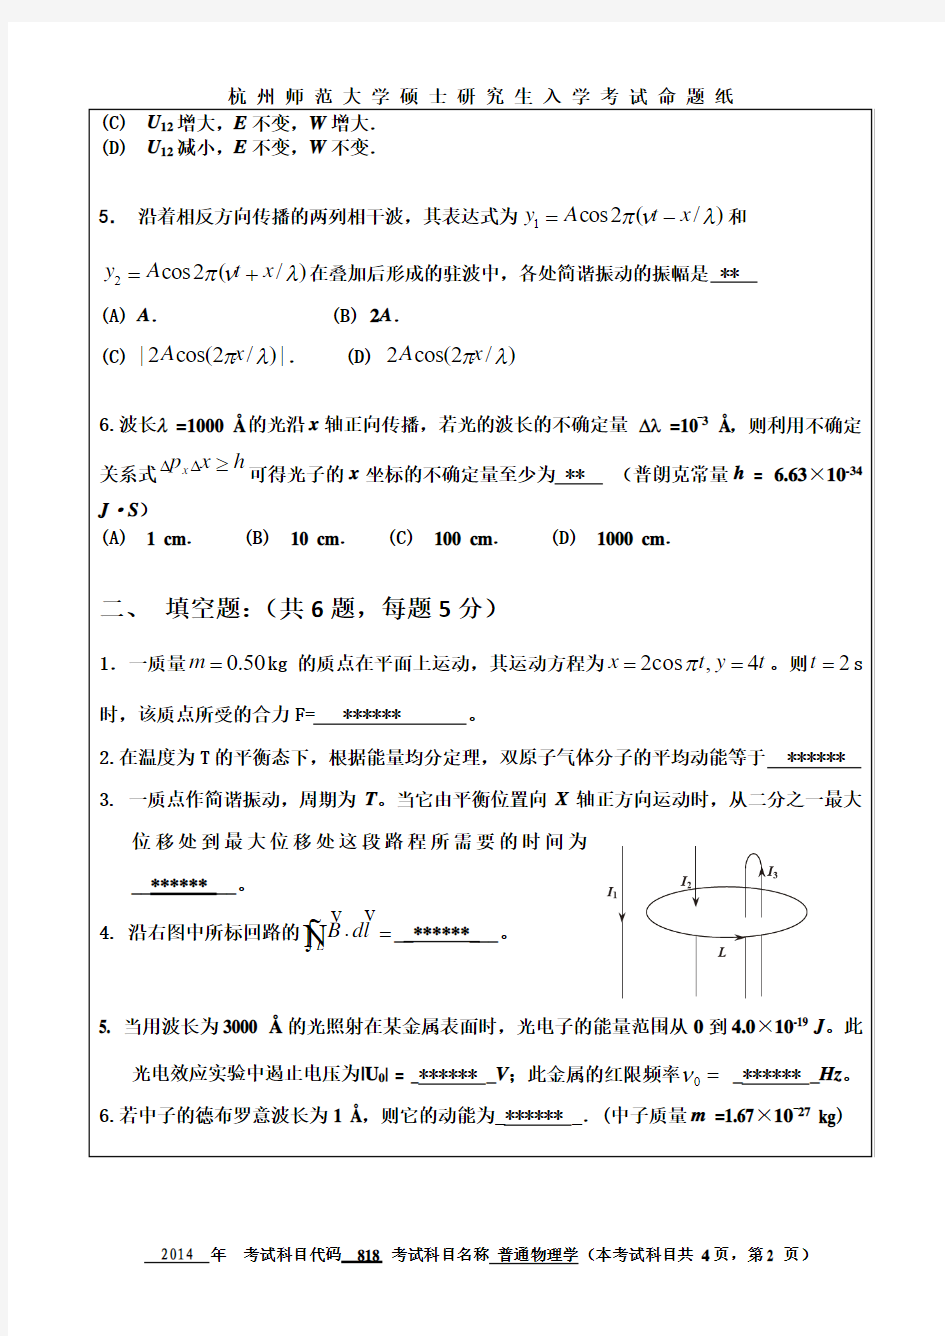 杭州师范大学普通物理学考研试题(2014年~2017年)